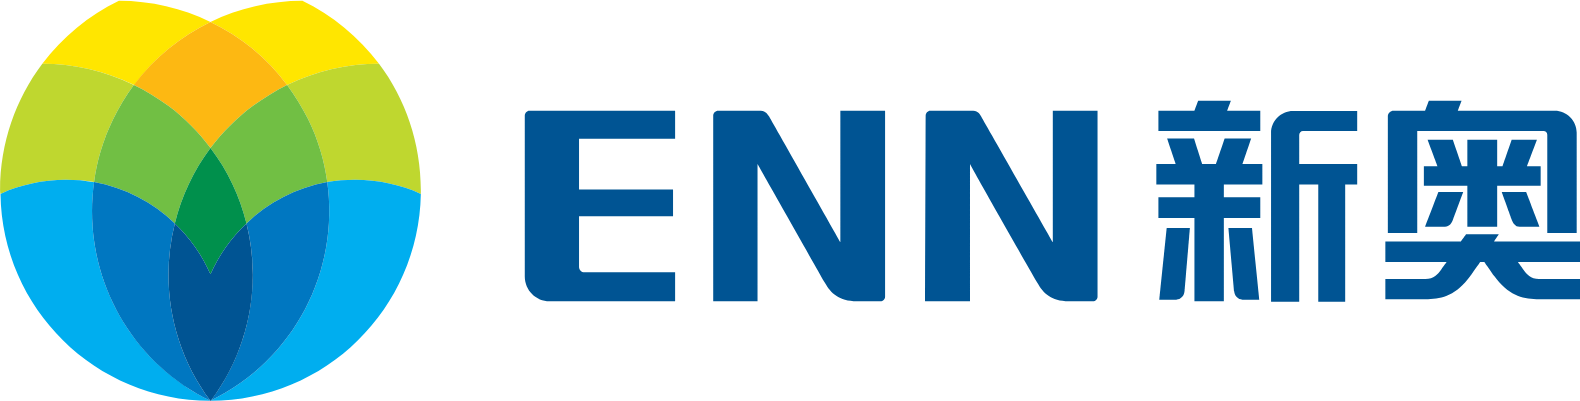 ENN Energy logo large (transparent PNG)